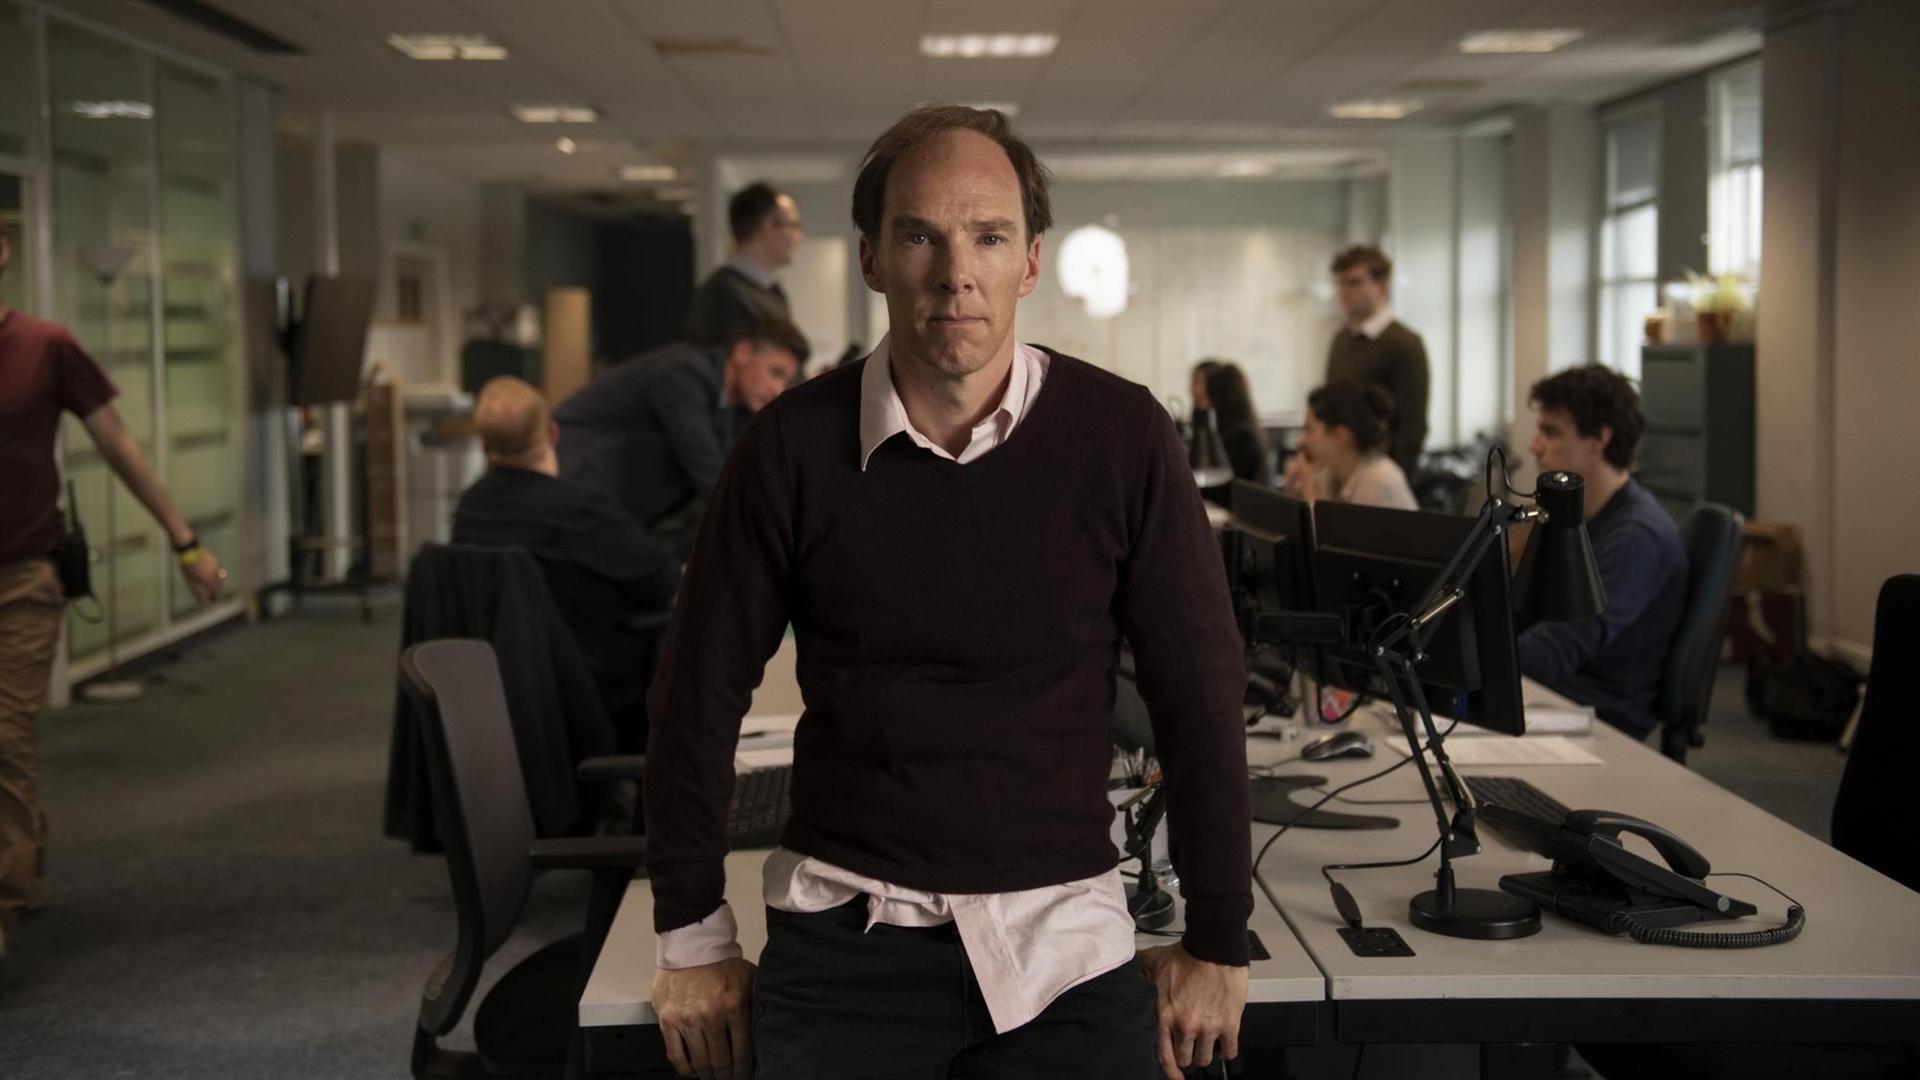 Benedict Cumberbatch in der Rolle des Dominic Cummings in dem Film "Brexit - The uncivil war" sitzt mittig auf einem Tisch in einem geschäftigen Großraumbüro und blickt in die Kamera.